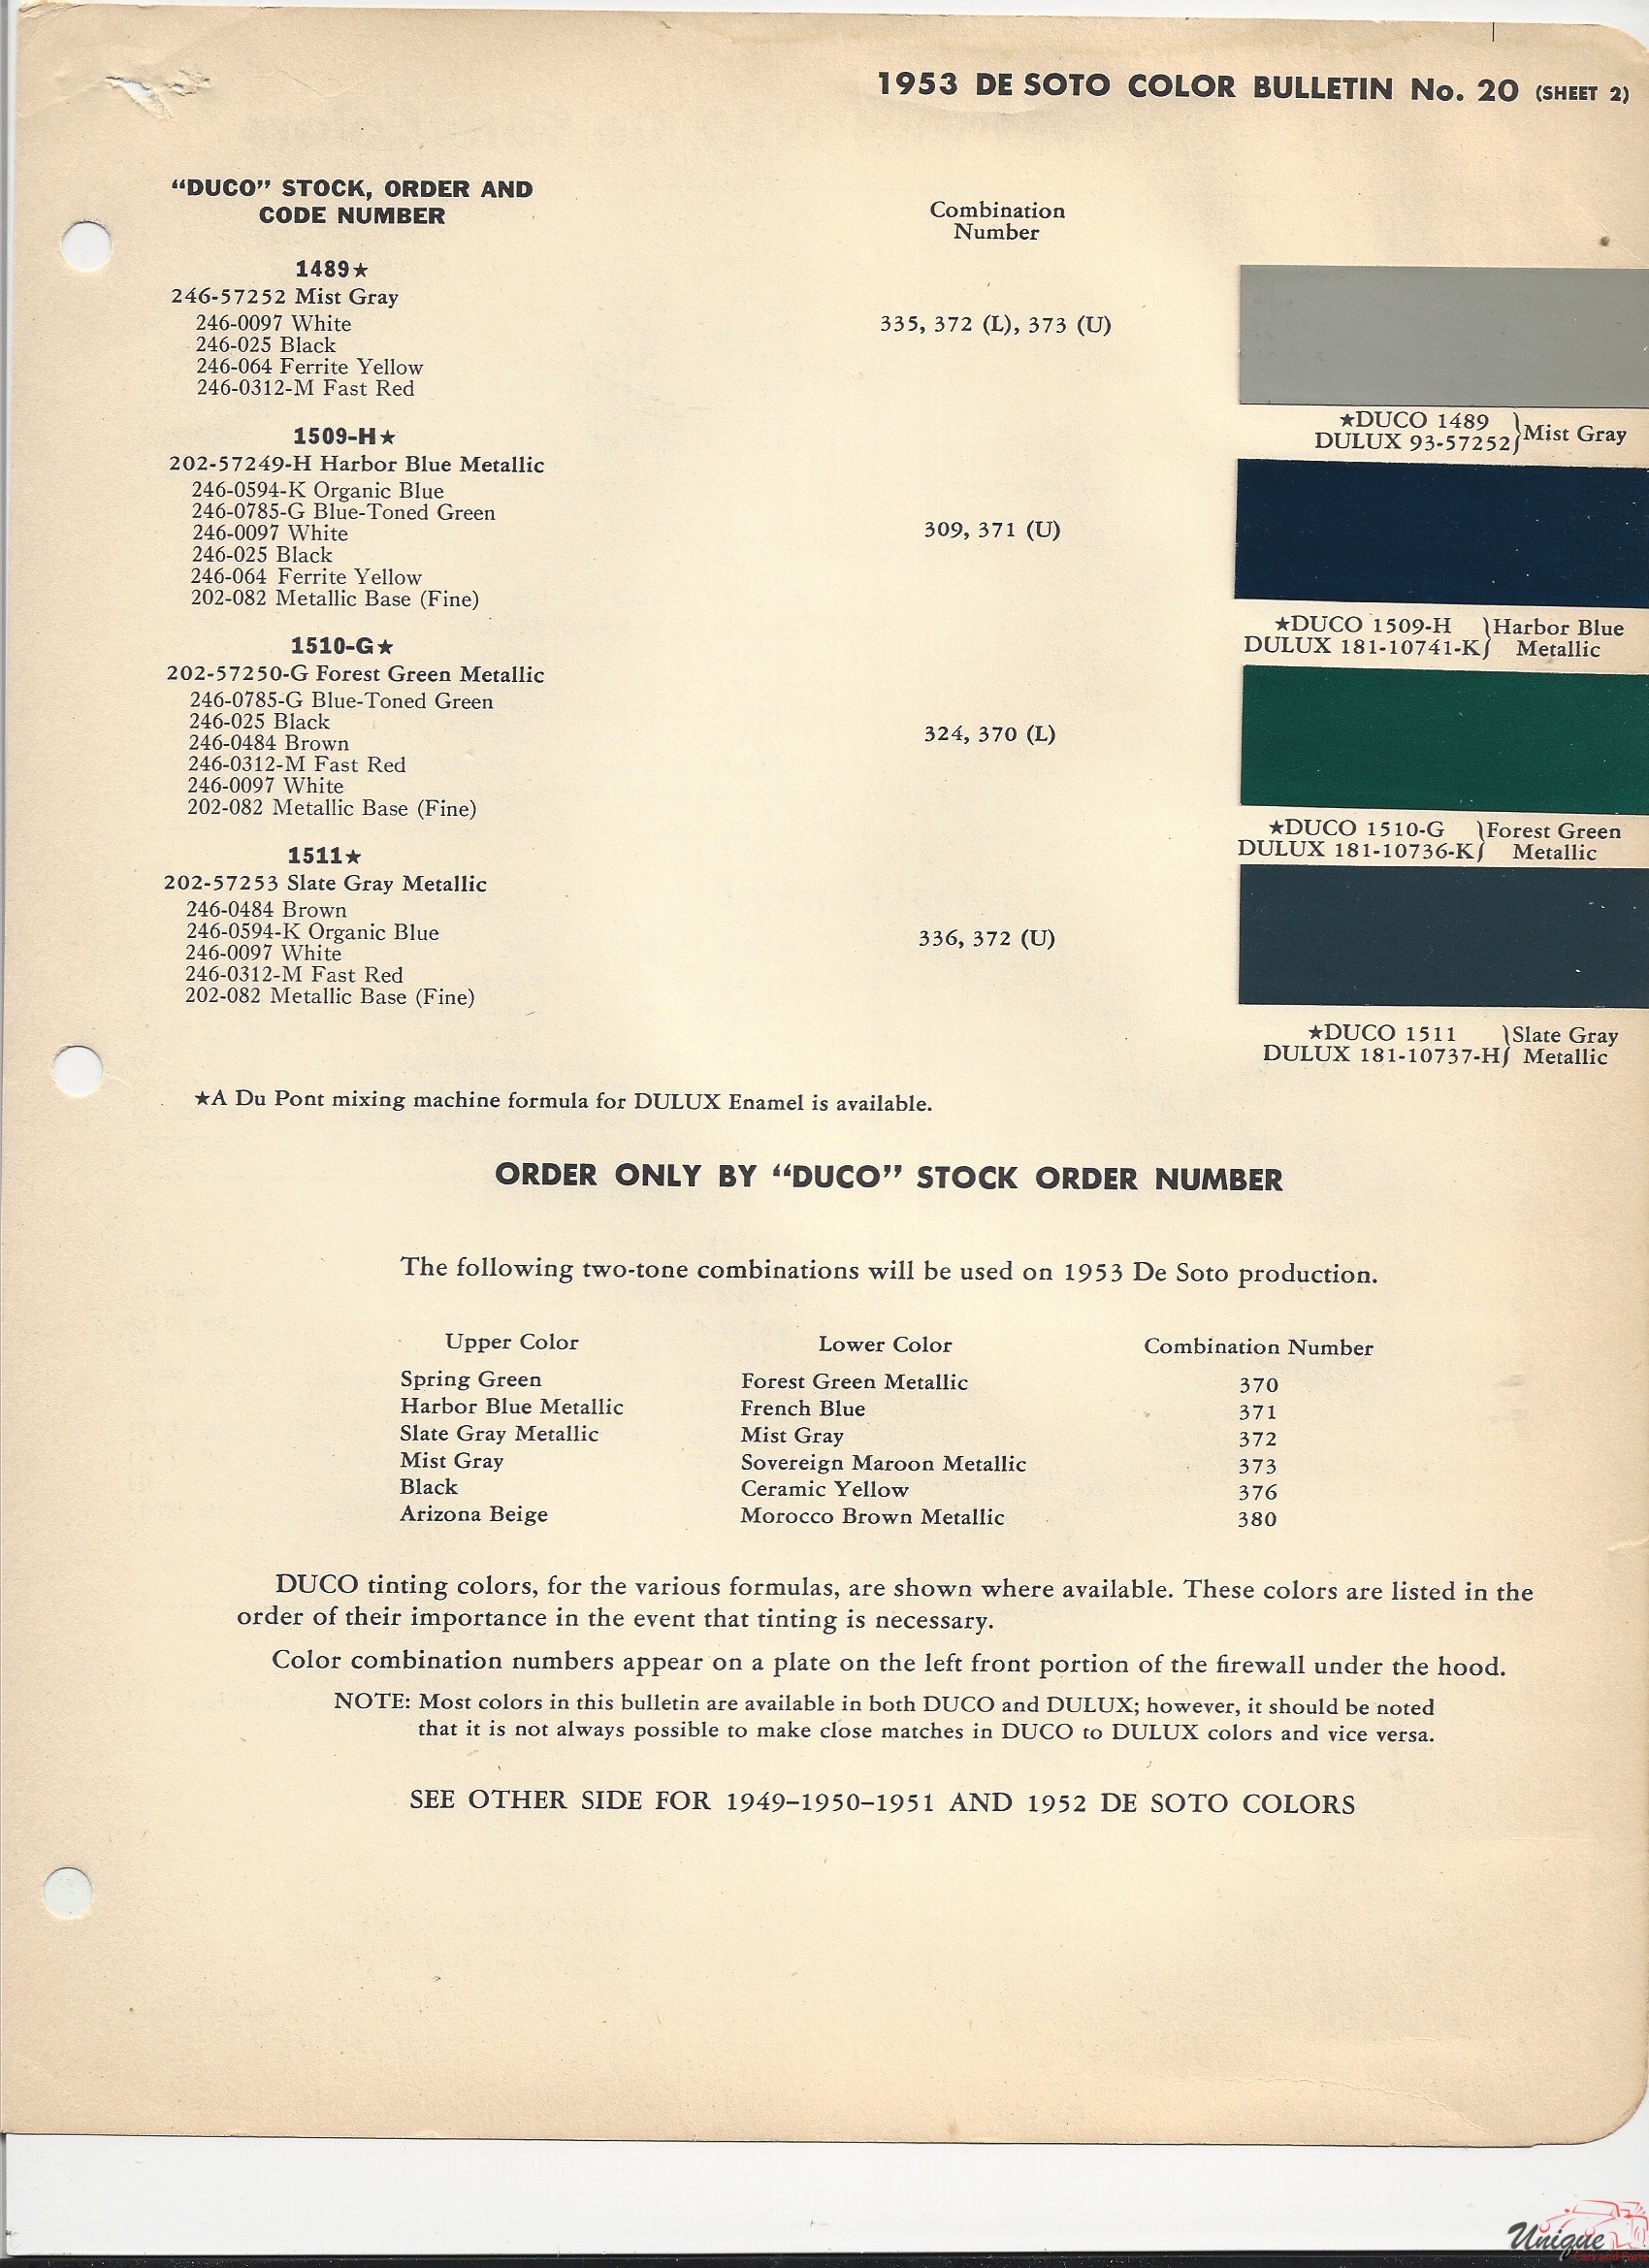 1953 De Soto-2 Paint Charts